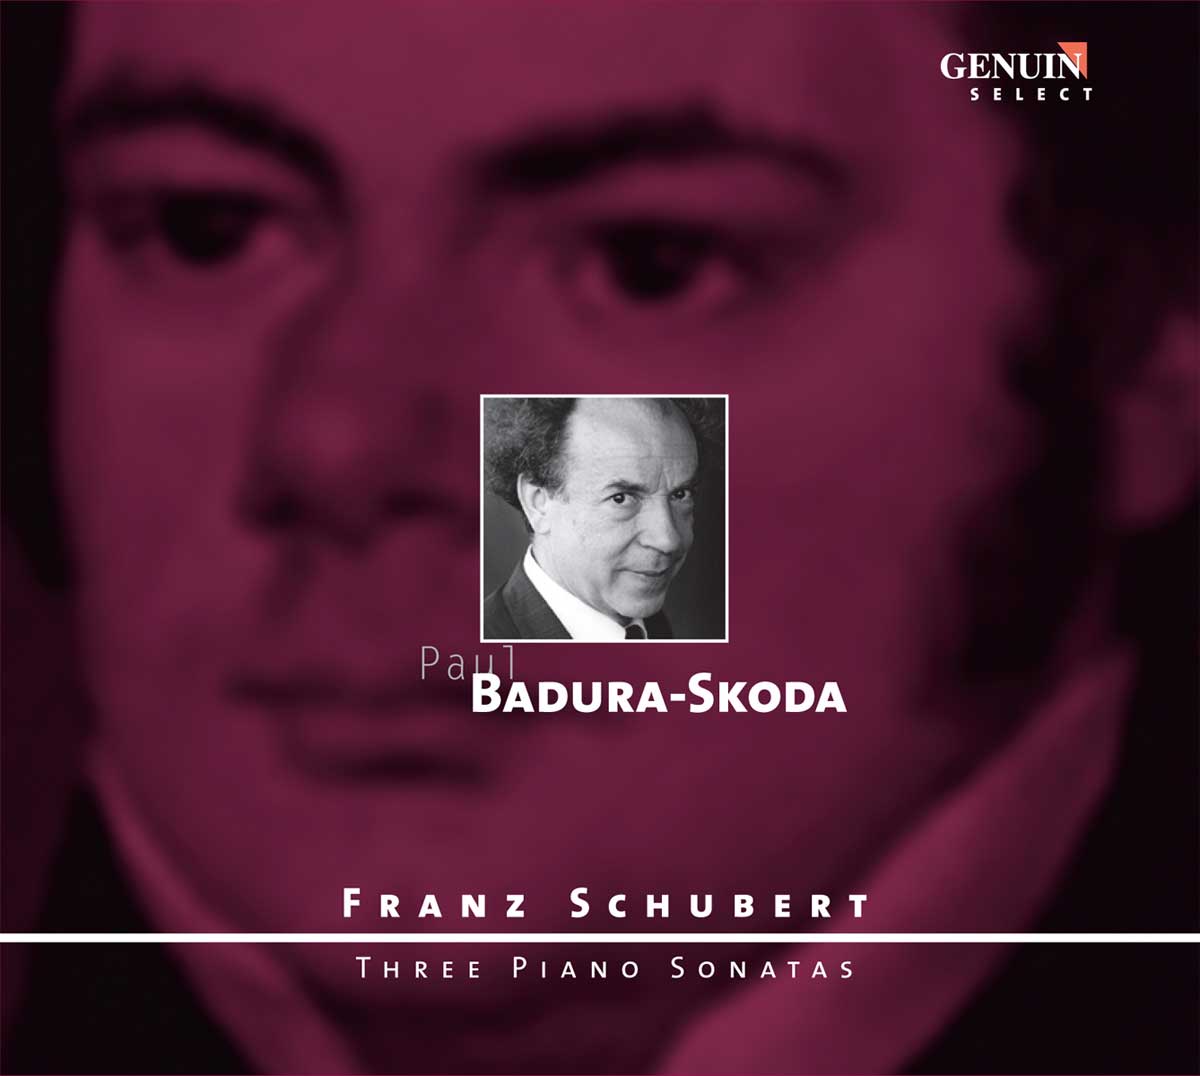 CD album cover 'Franz Schubert: Drei Klaviersonaten' (GEN 86057) with Paul Badura-Skoda